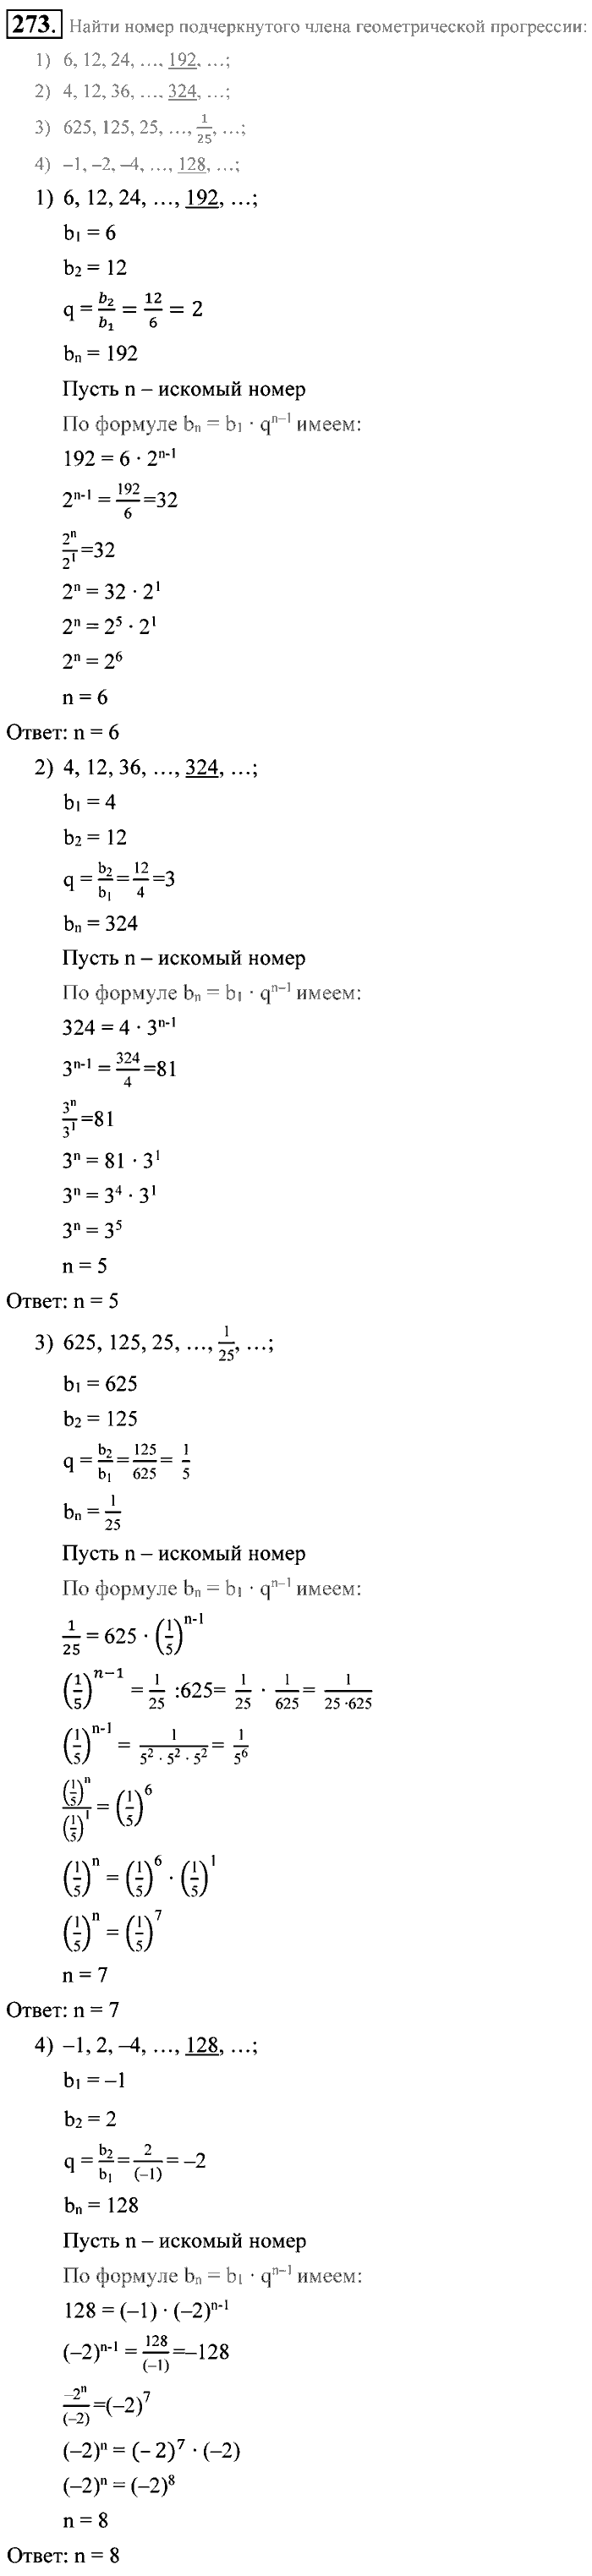 Алгебра, 9 класс, Алимов, Колягин, 2001, Проверь себя Задание: 273